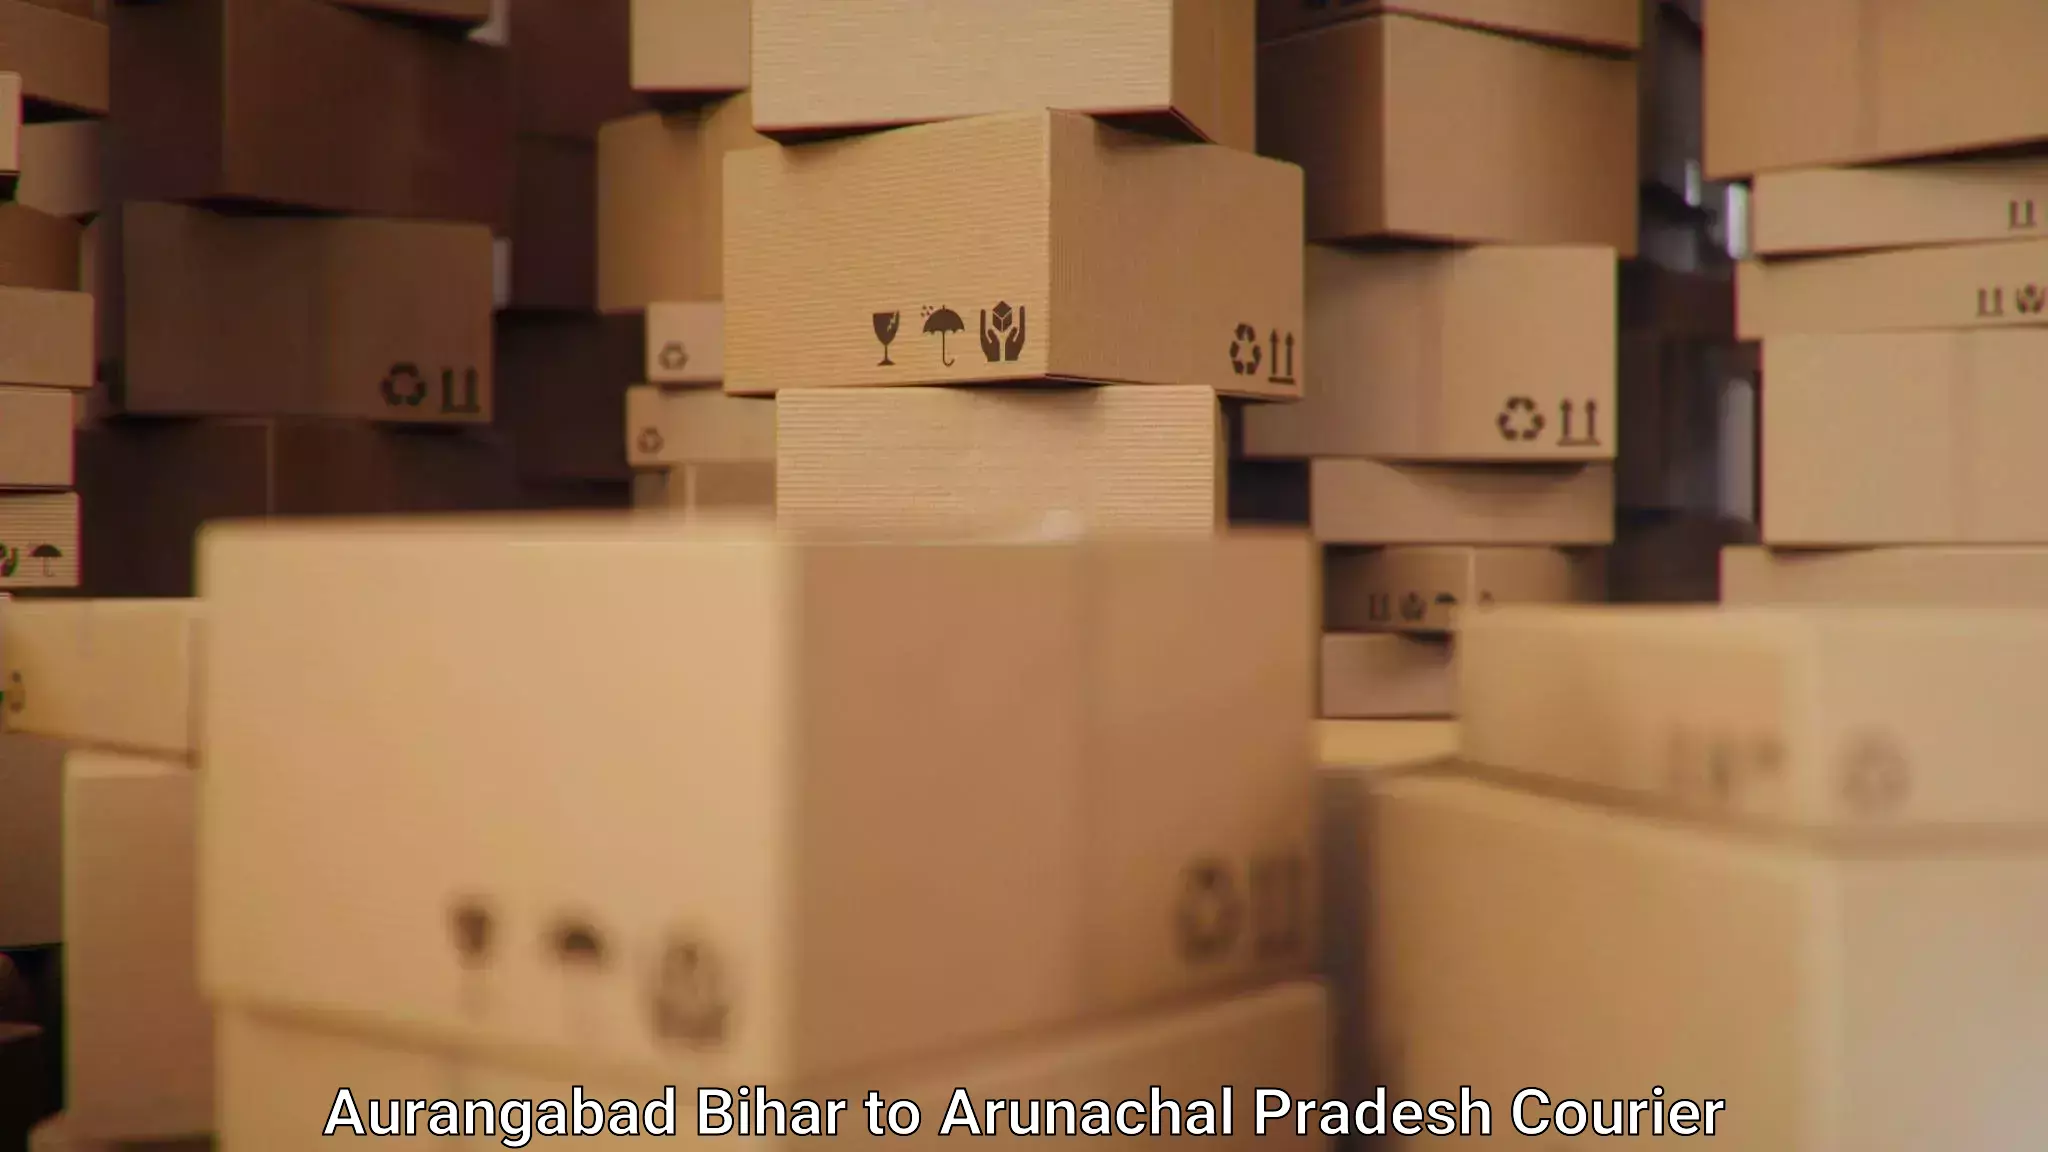 Express logistics service Aurangabad Bihar to Likabali